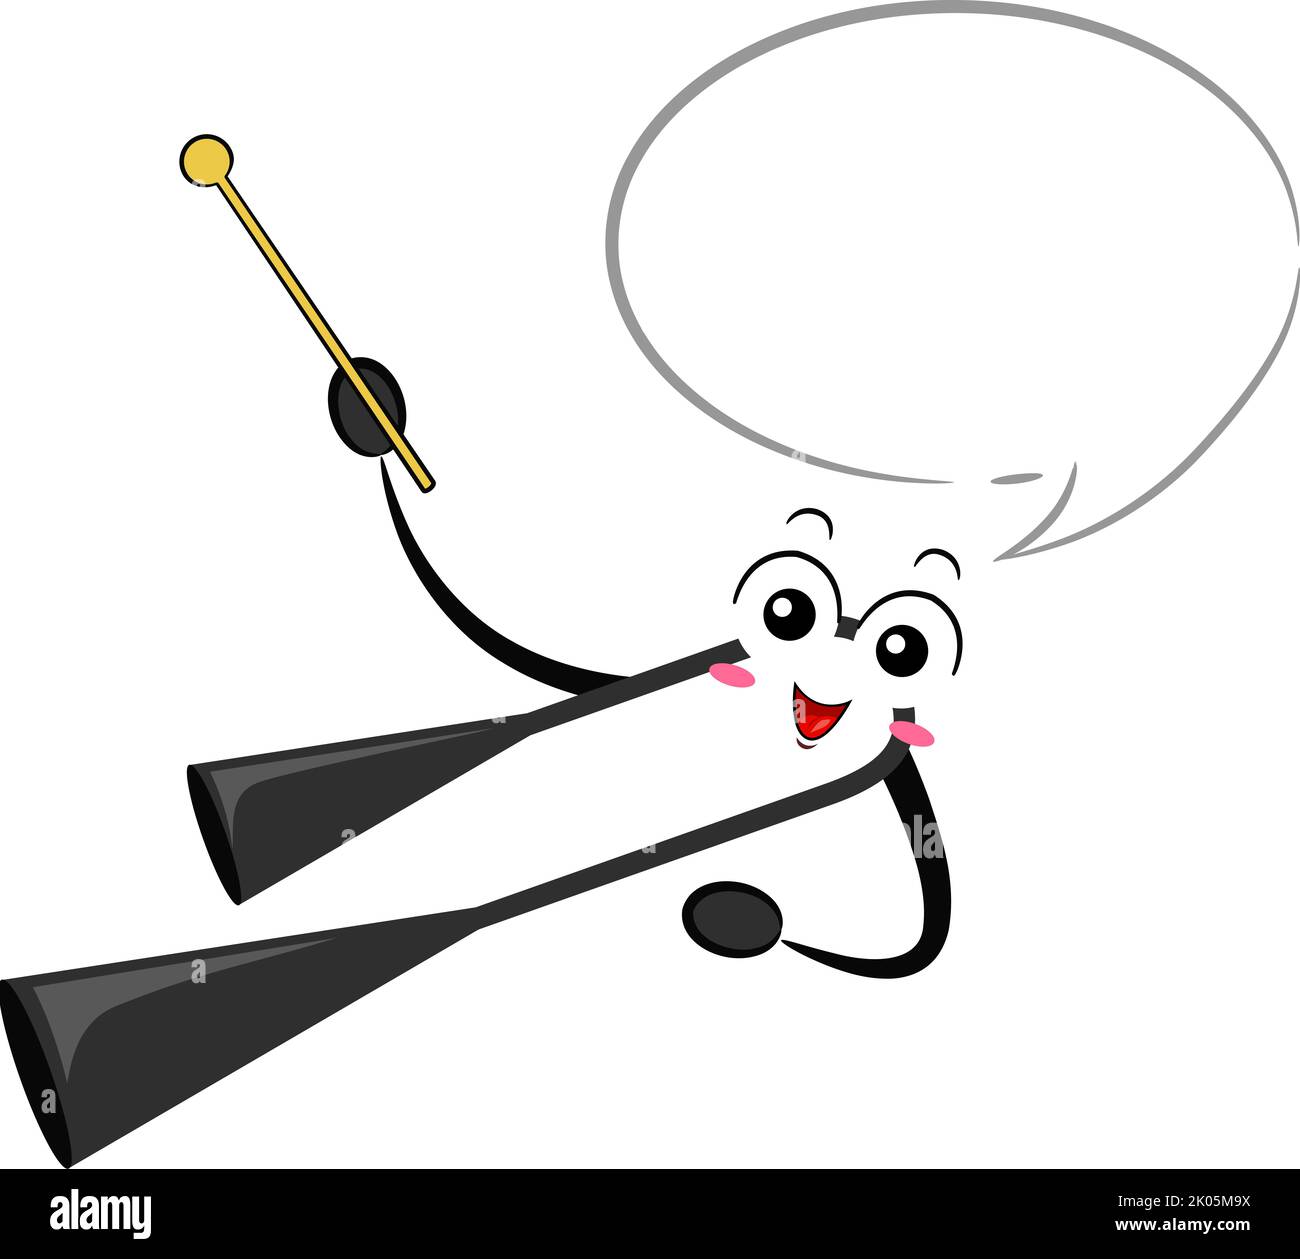 Illustrazione di Mascot Agogo Bell strumento musicale che tiene bastone di legno con bolla vocale Foto Stock